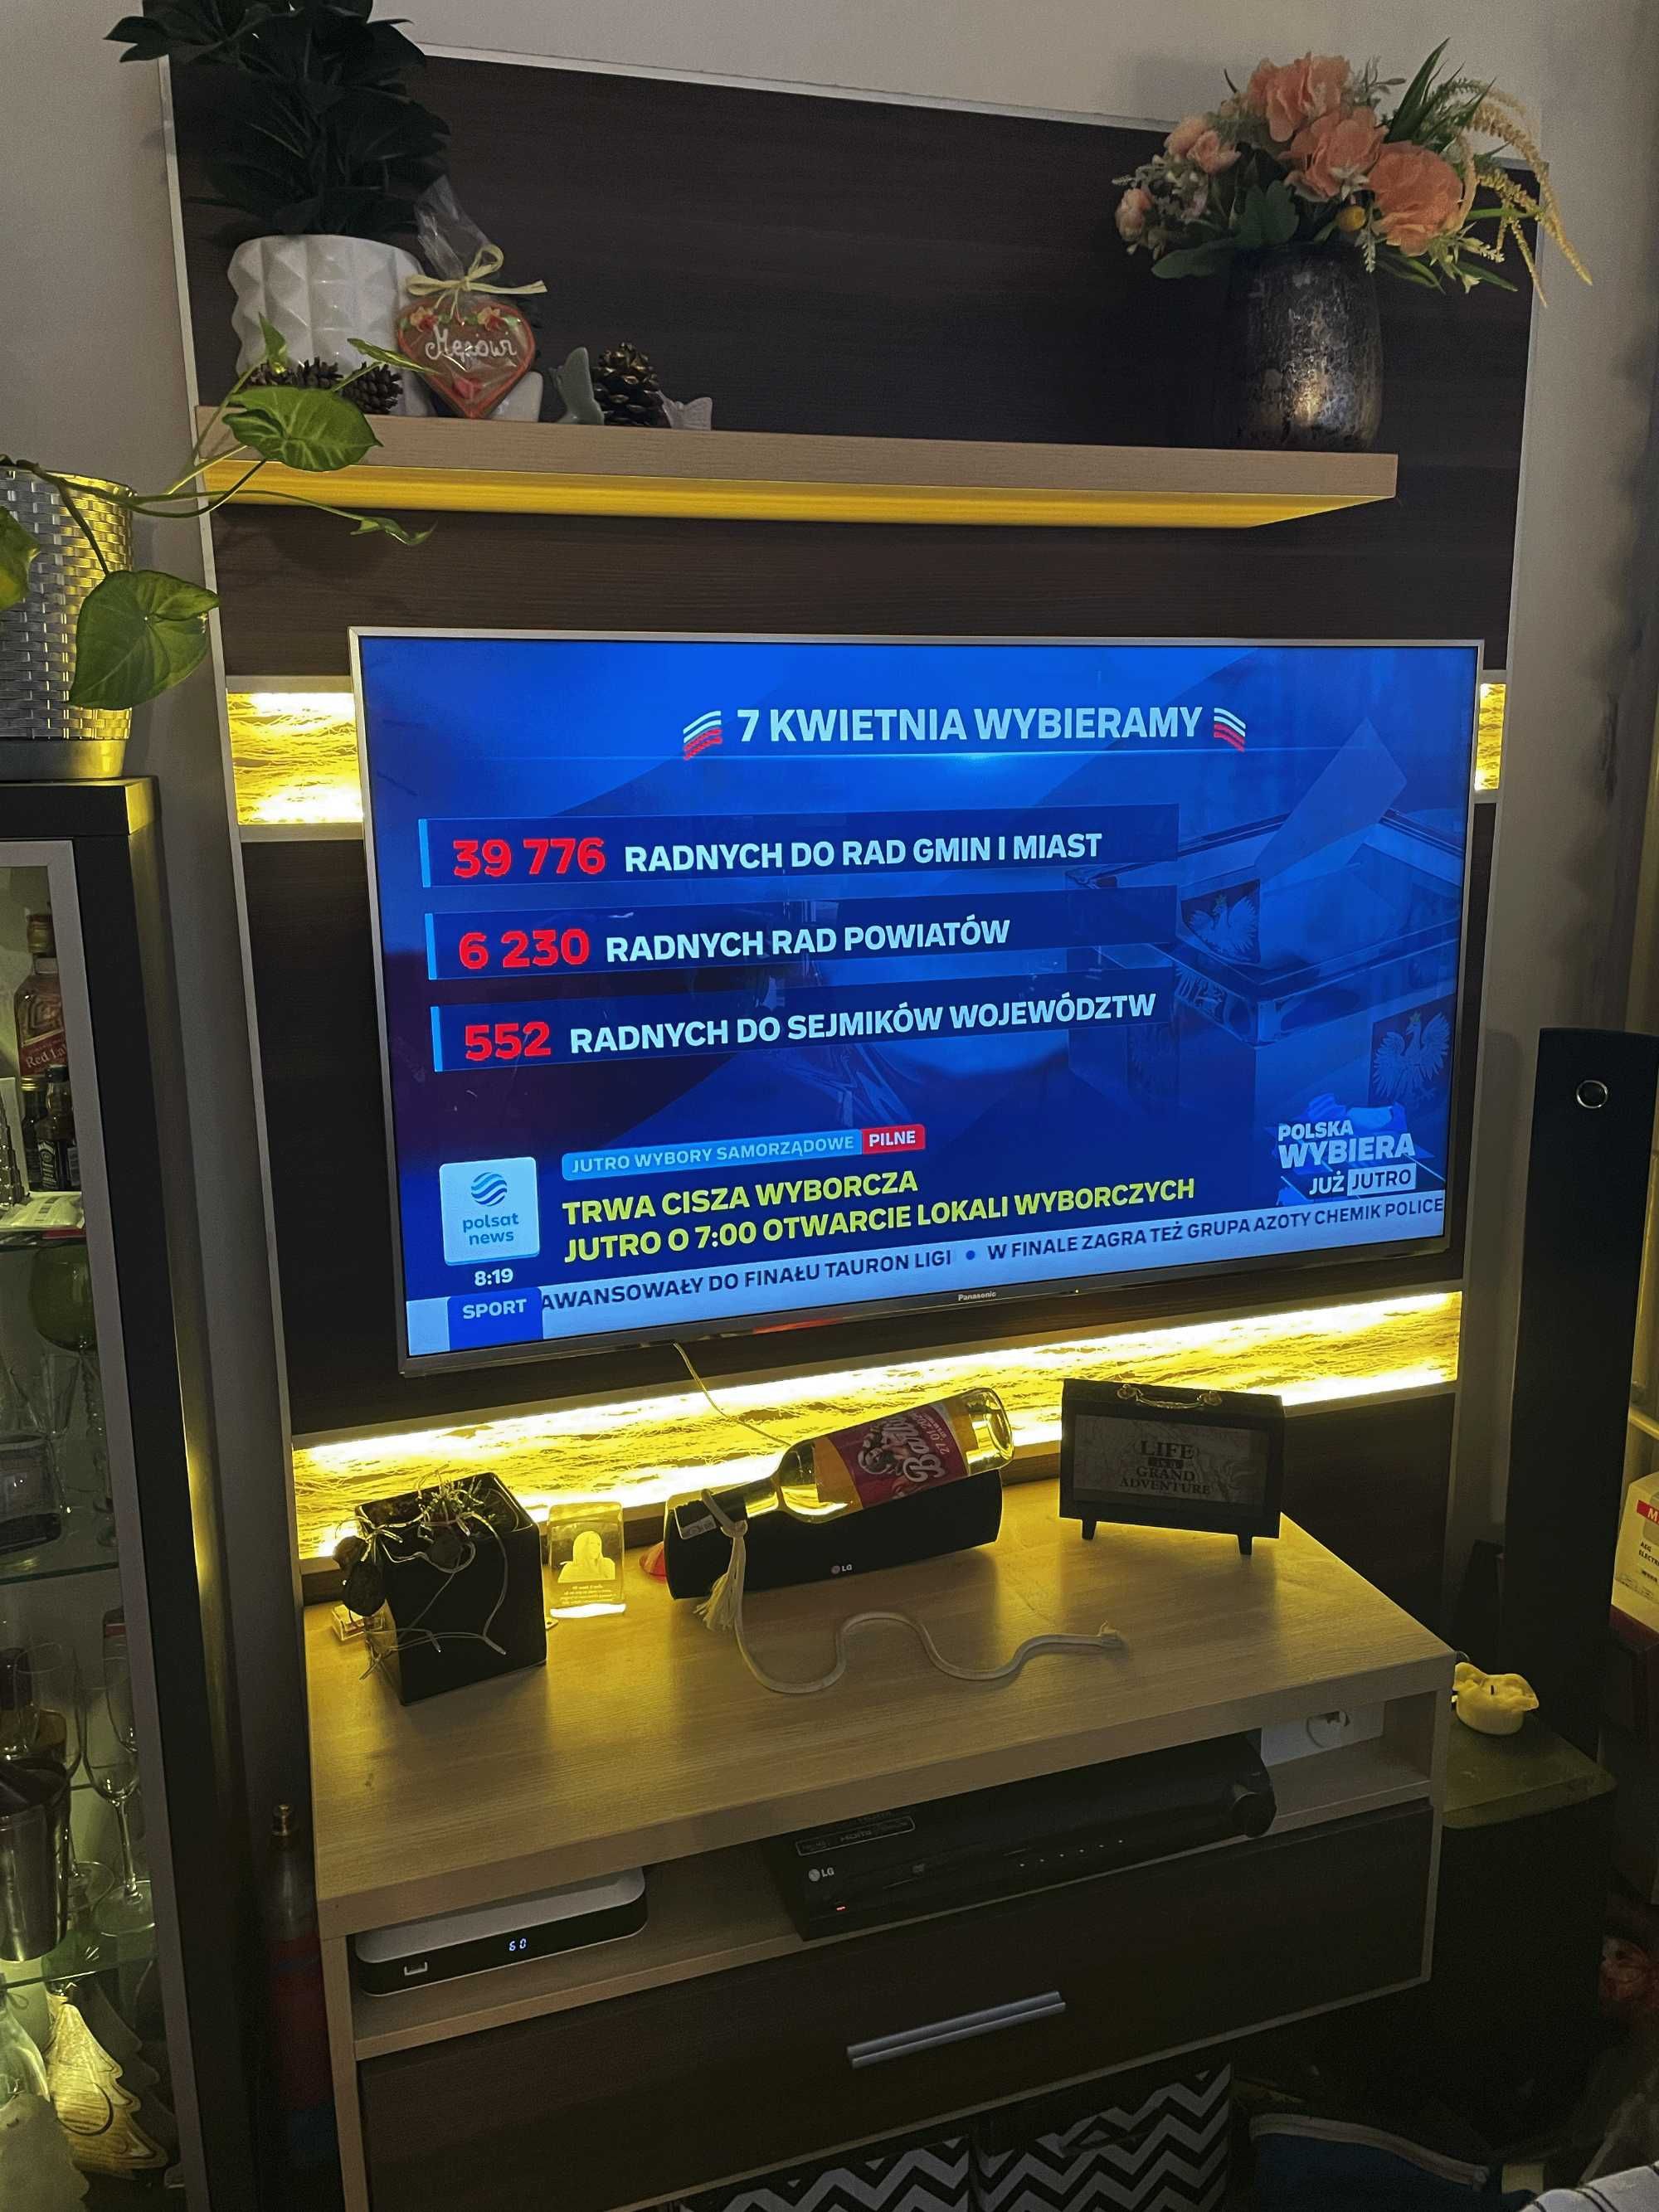 RTV - Ścianka pod TV i sprzęt - podświetlana LED